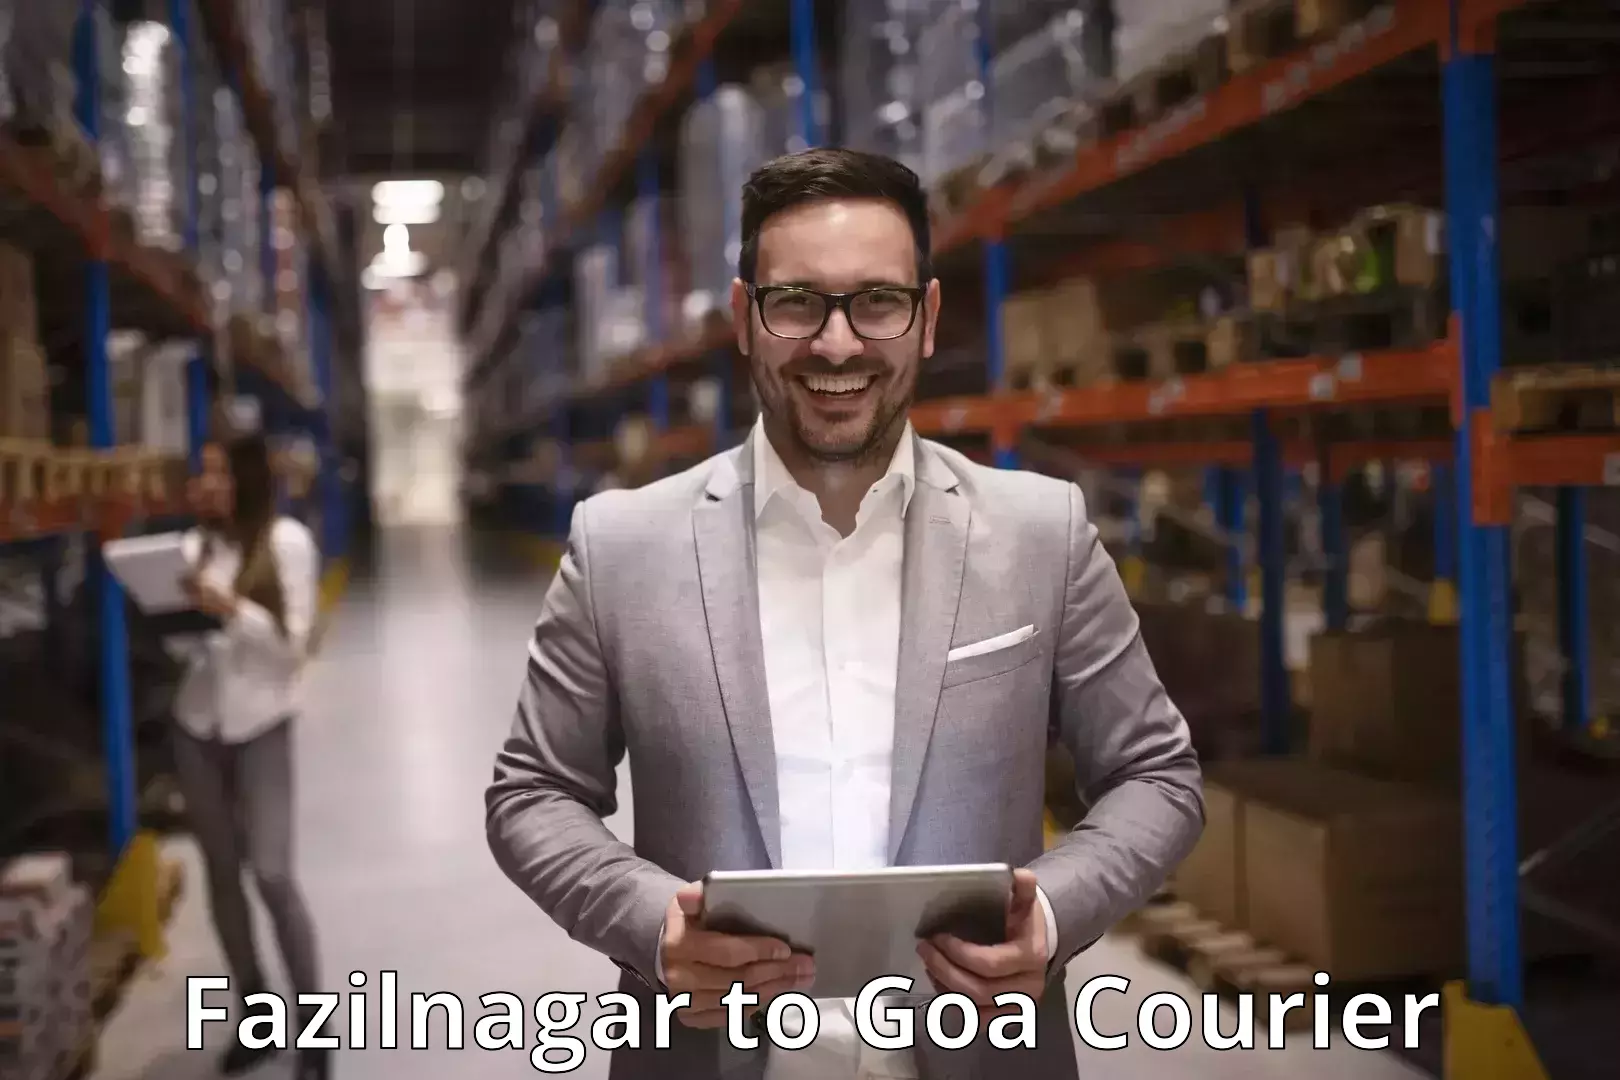 Courier app Fazilnagar to Bardez